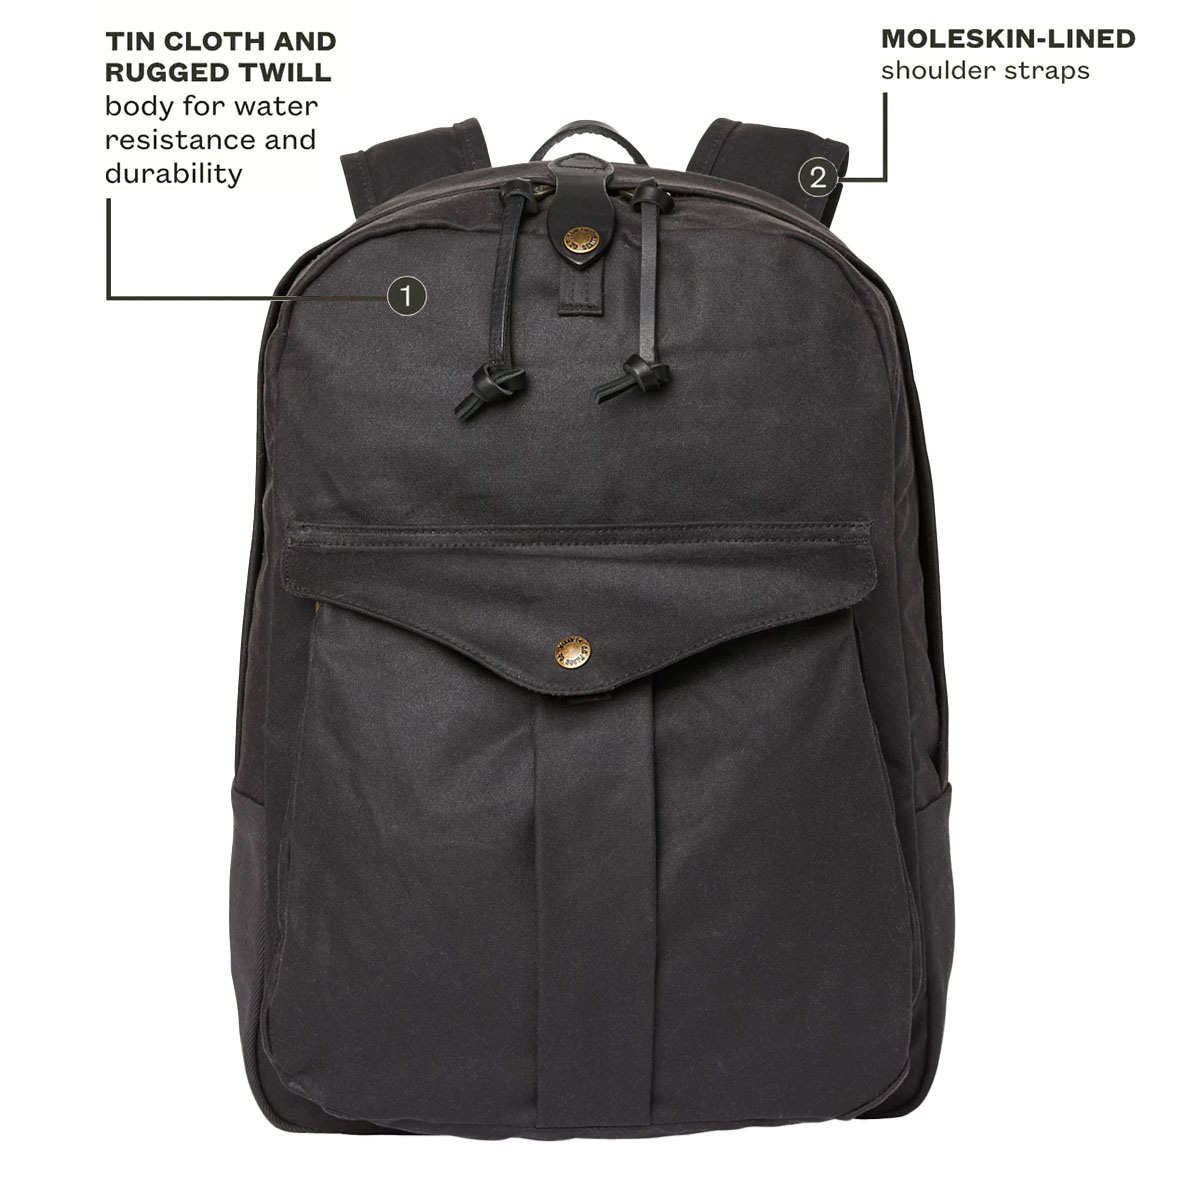 Filson Journeyman Backpack Cinder, hergestellt aus Tin Cloth und Rugged Twill Canvas für Wasserdichtigkeit und Haltbarkeit